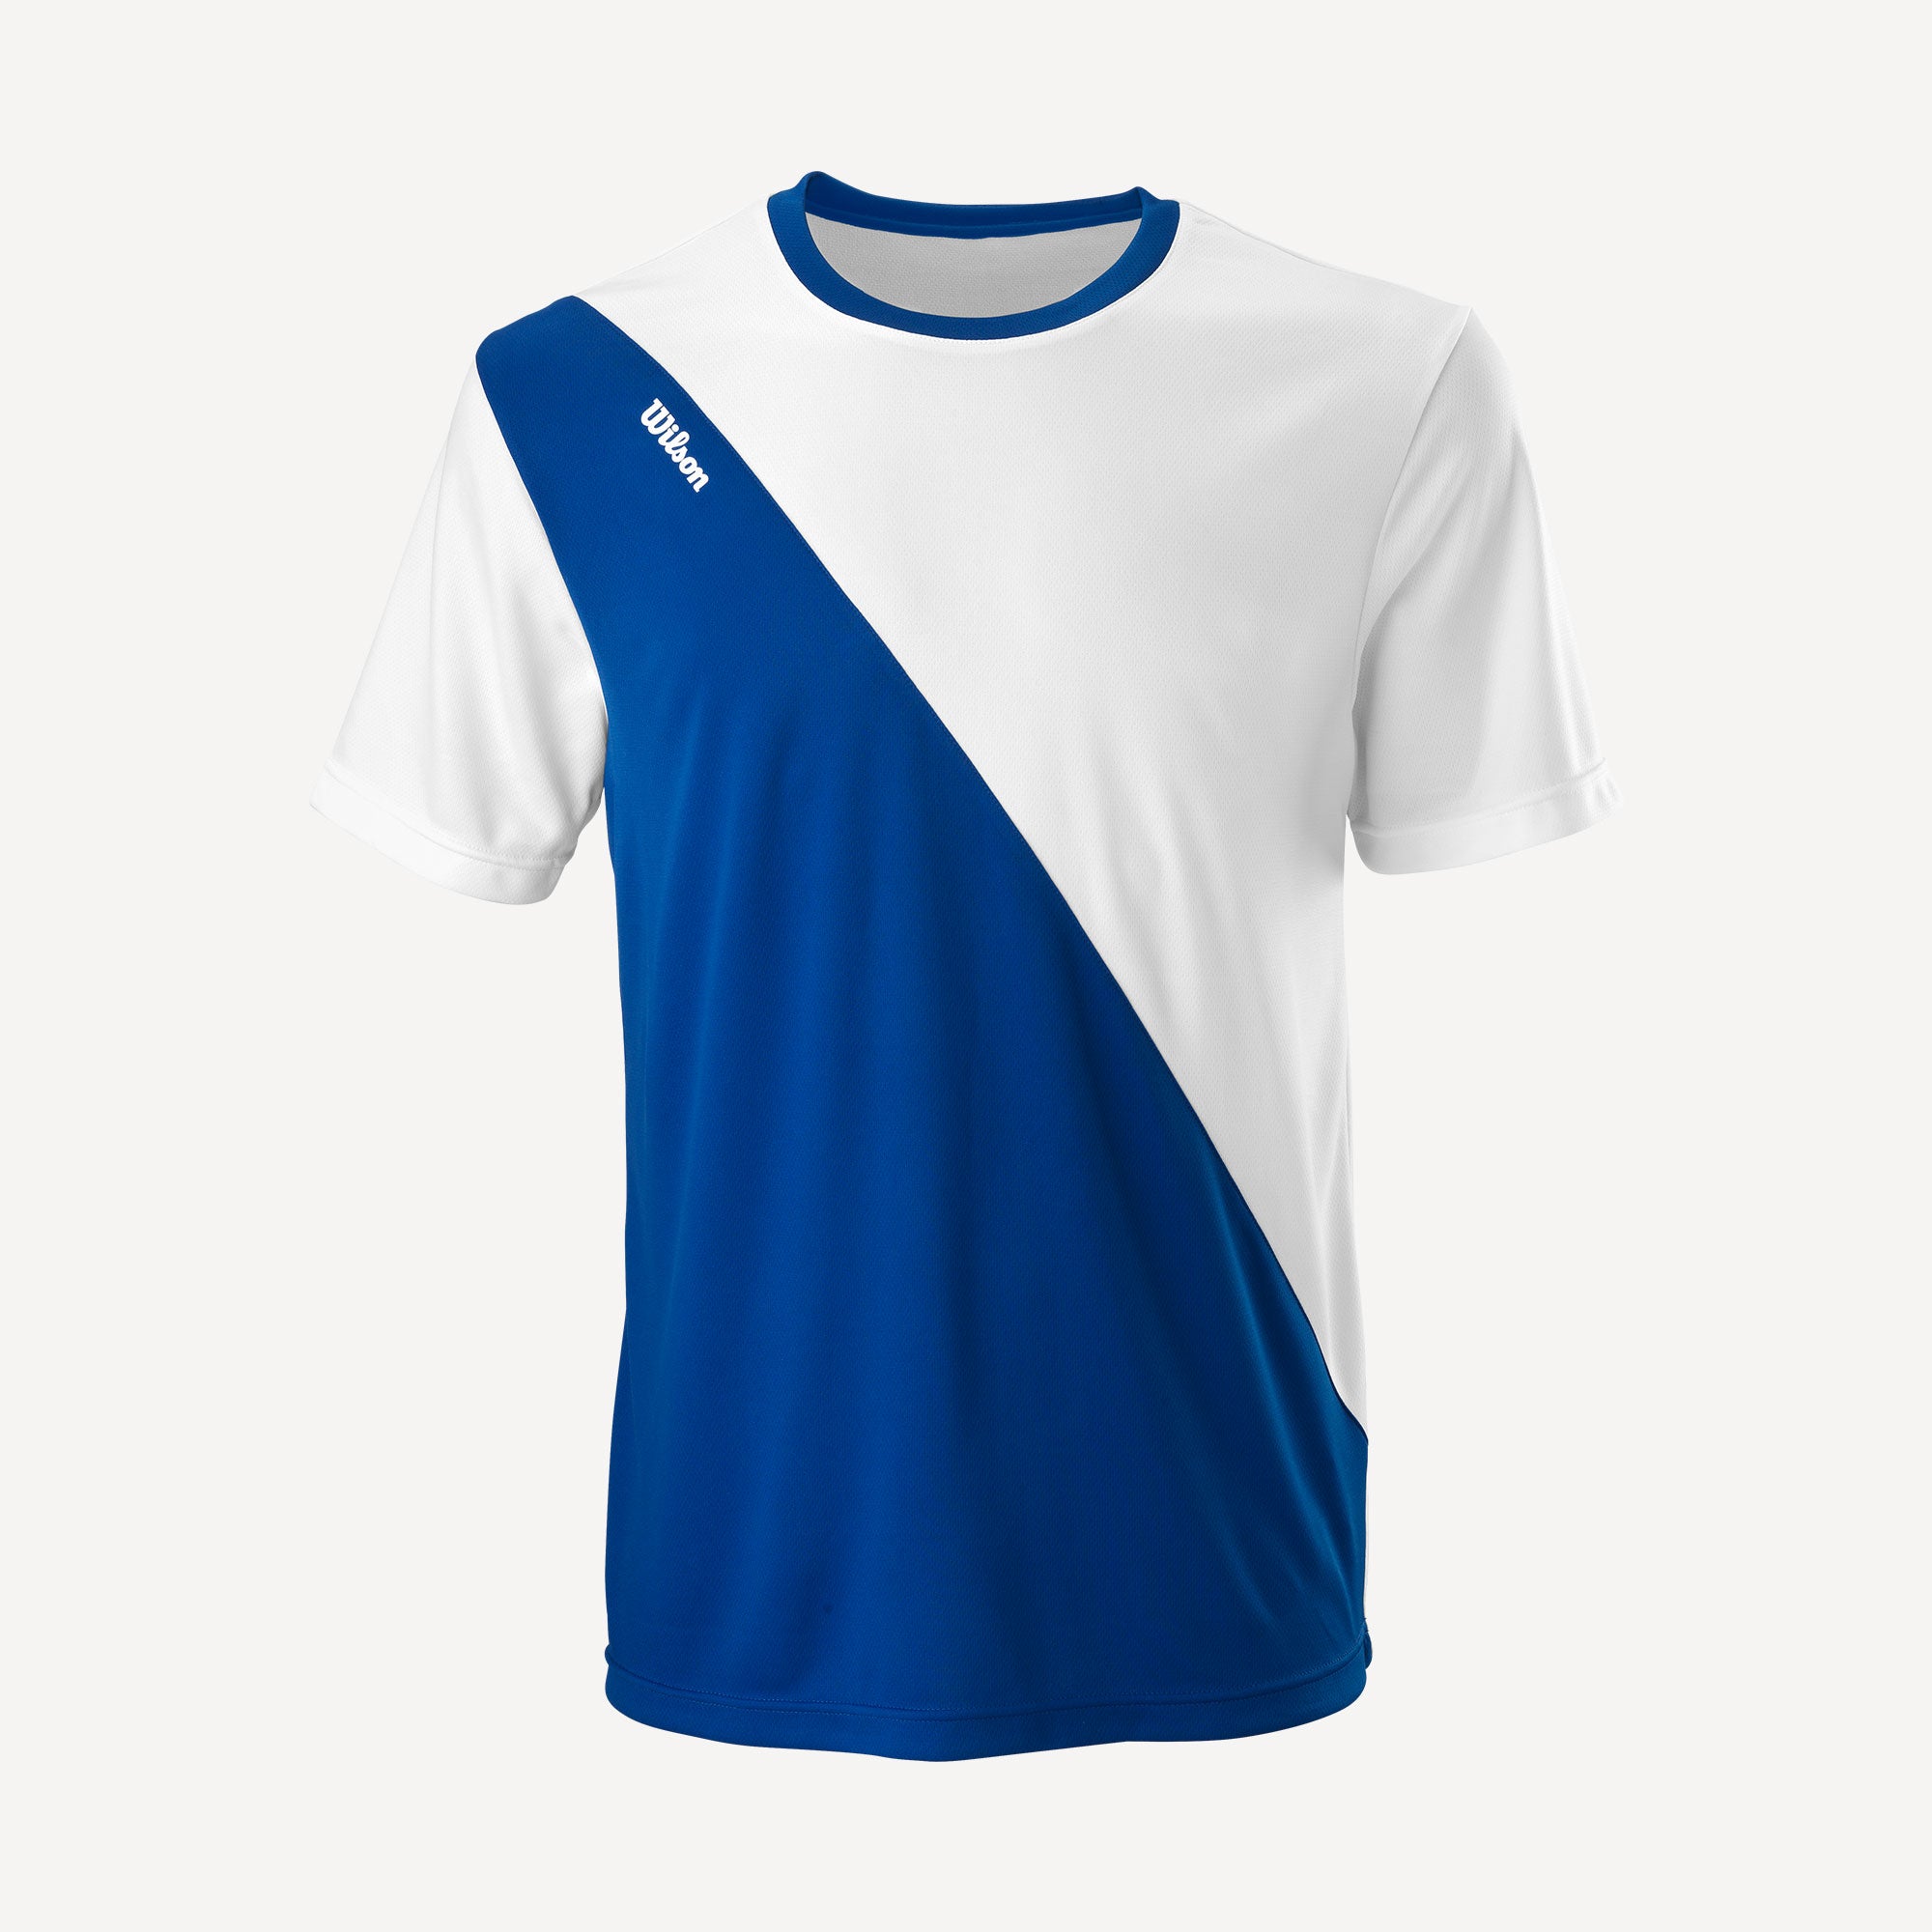 Wilson Team 2 Men's Tennis Shirt Blue (1)